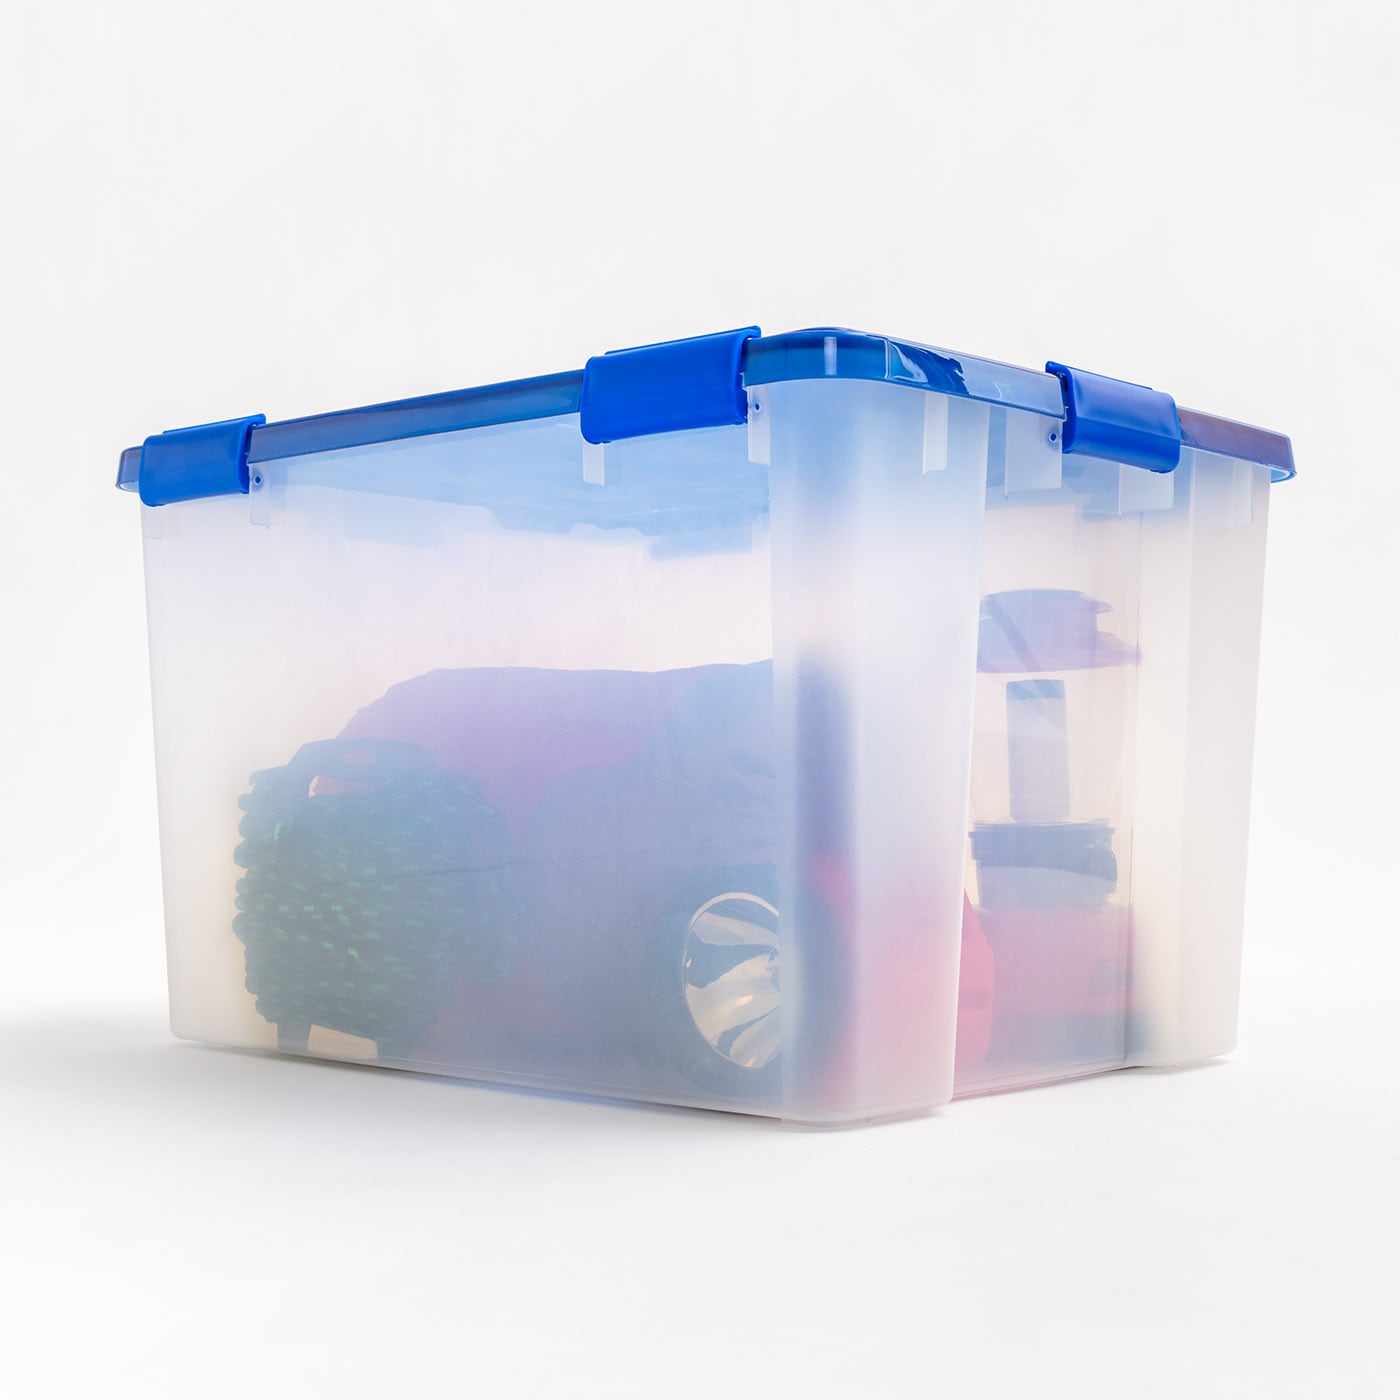 18 Gallon Waterproof Storage Bin – Heavy Duty Weatherproof Container by  HART